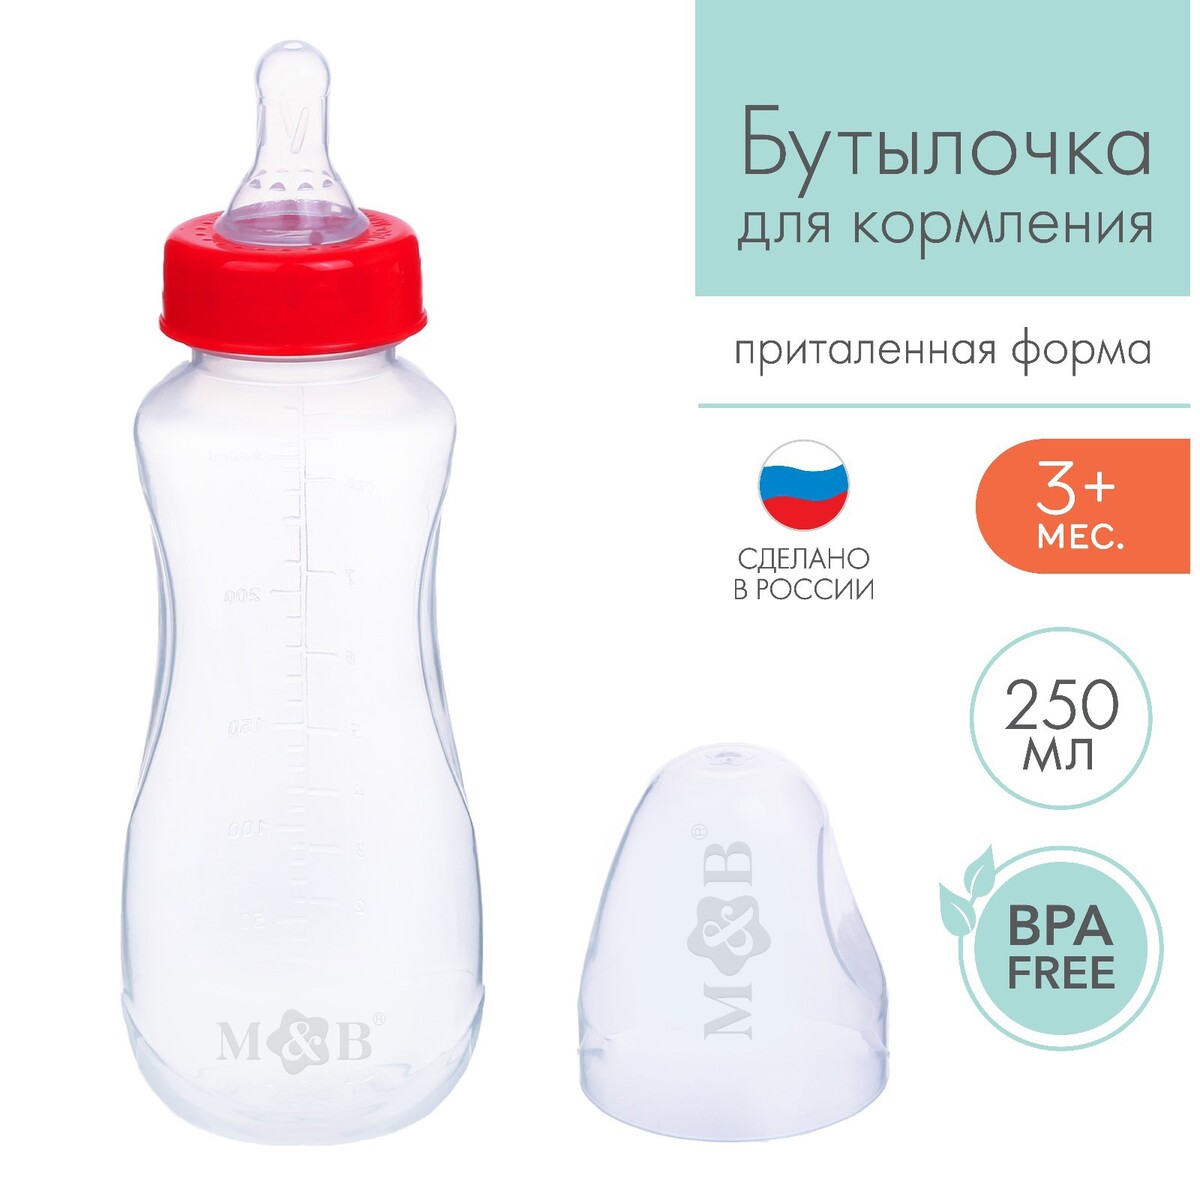 Бутылочка для кормления, классическое горло, приталенная, 250 мл., от 3 мес., цвет красный бутылочка для кормления m